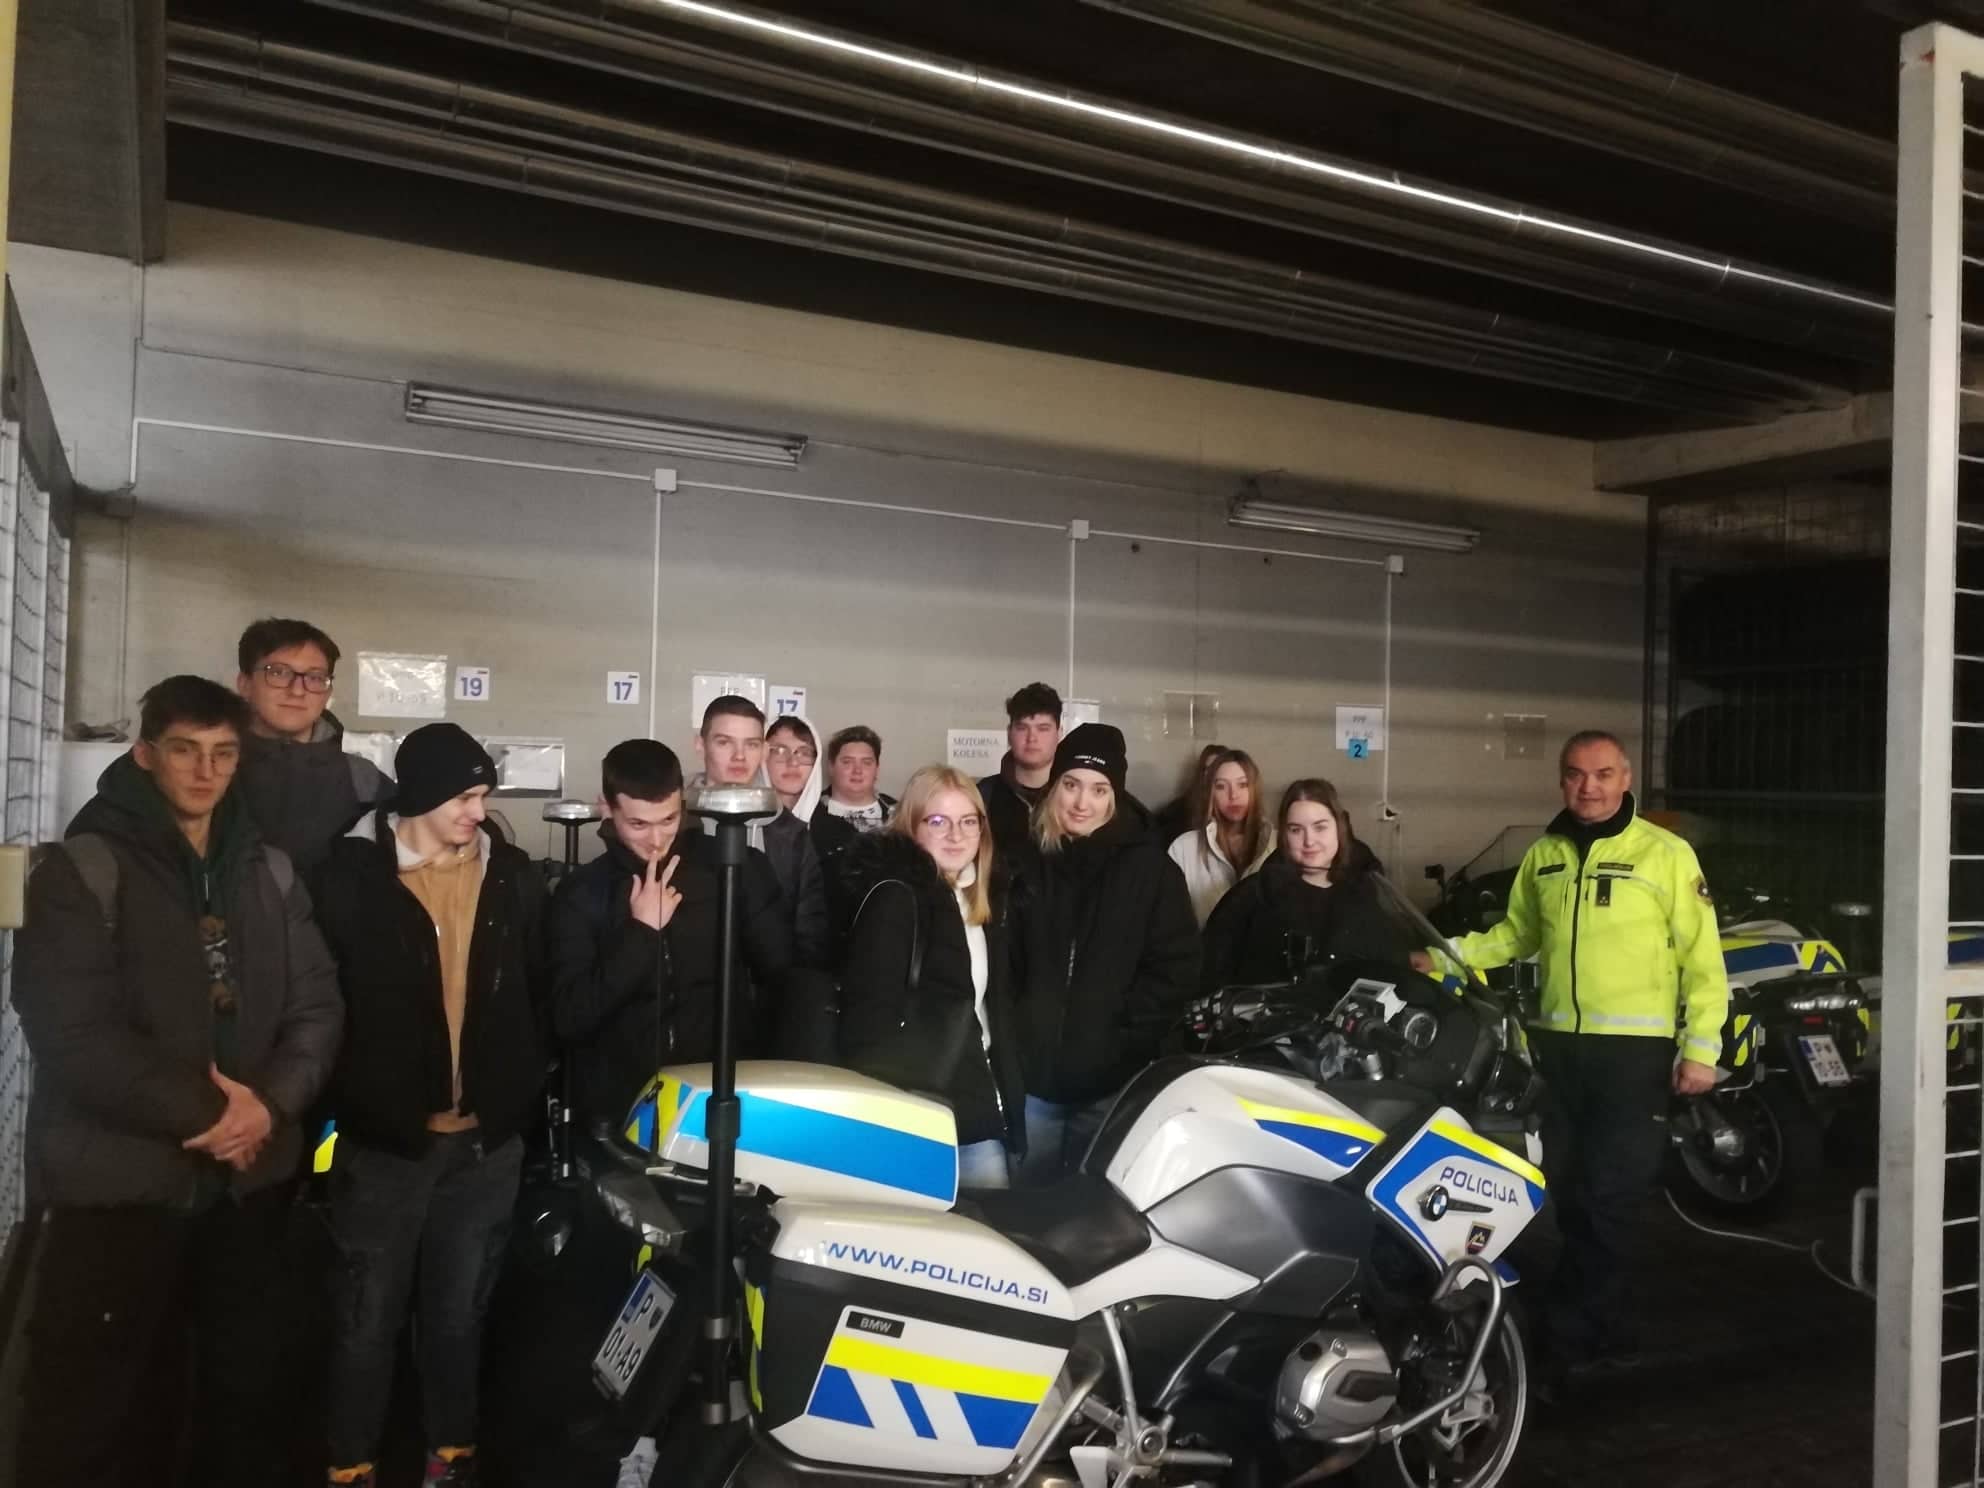 Dijaki obiskali Policijsko postajo Novo mesto